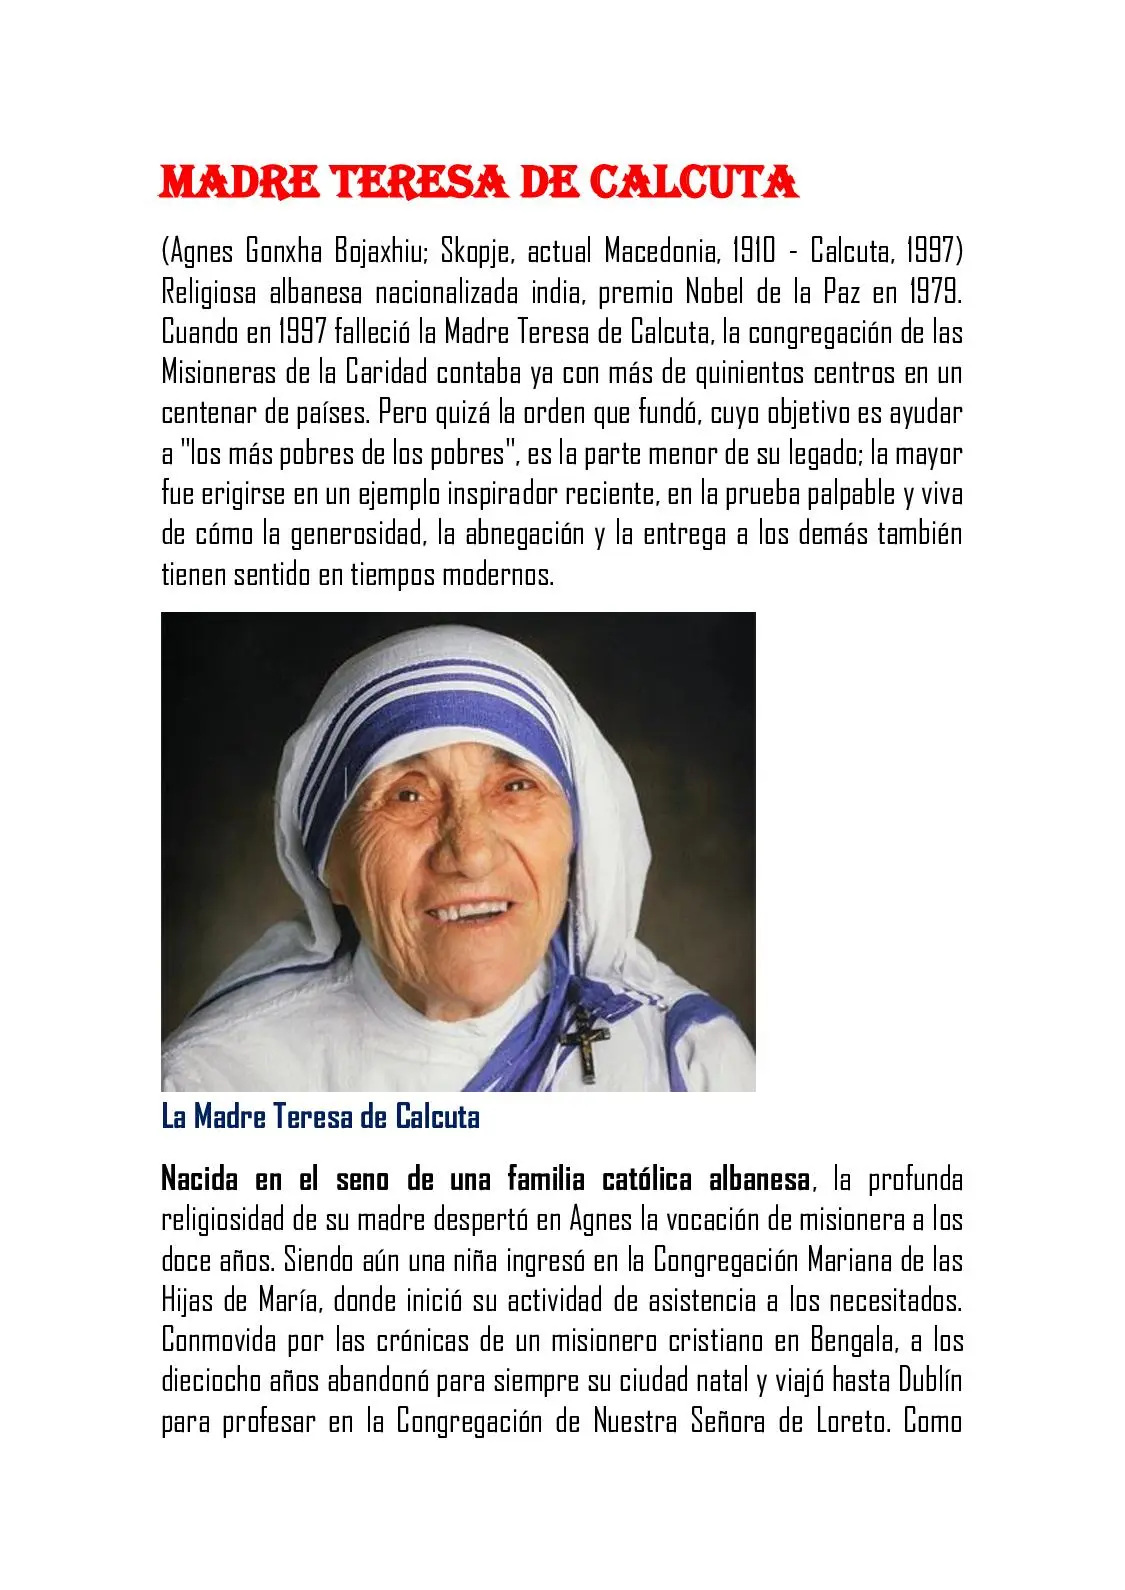 madre teresa de calcuta historia resumida - Qué hizo la Madre Teresa de Calcuta por las mujeres